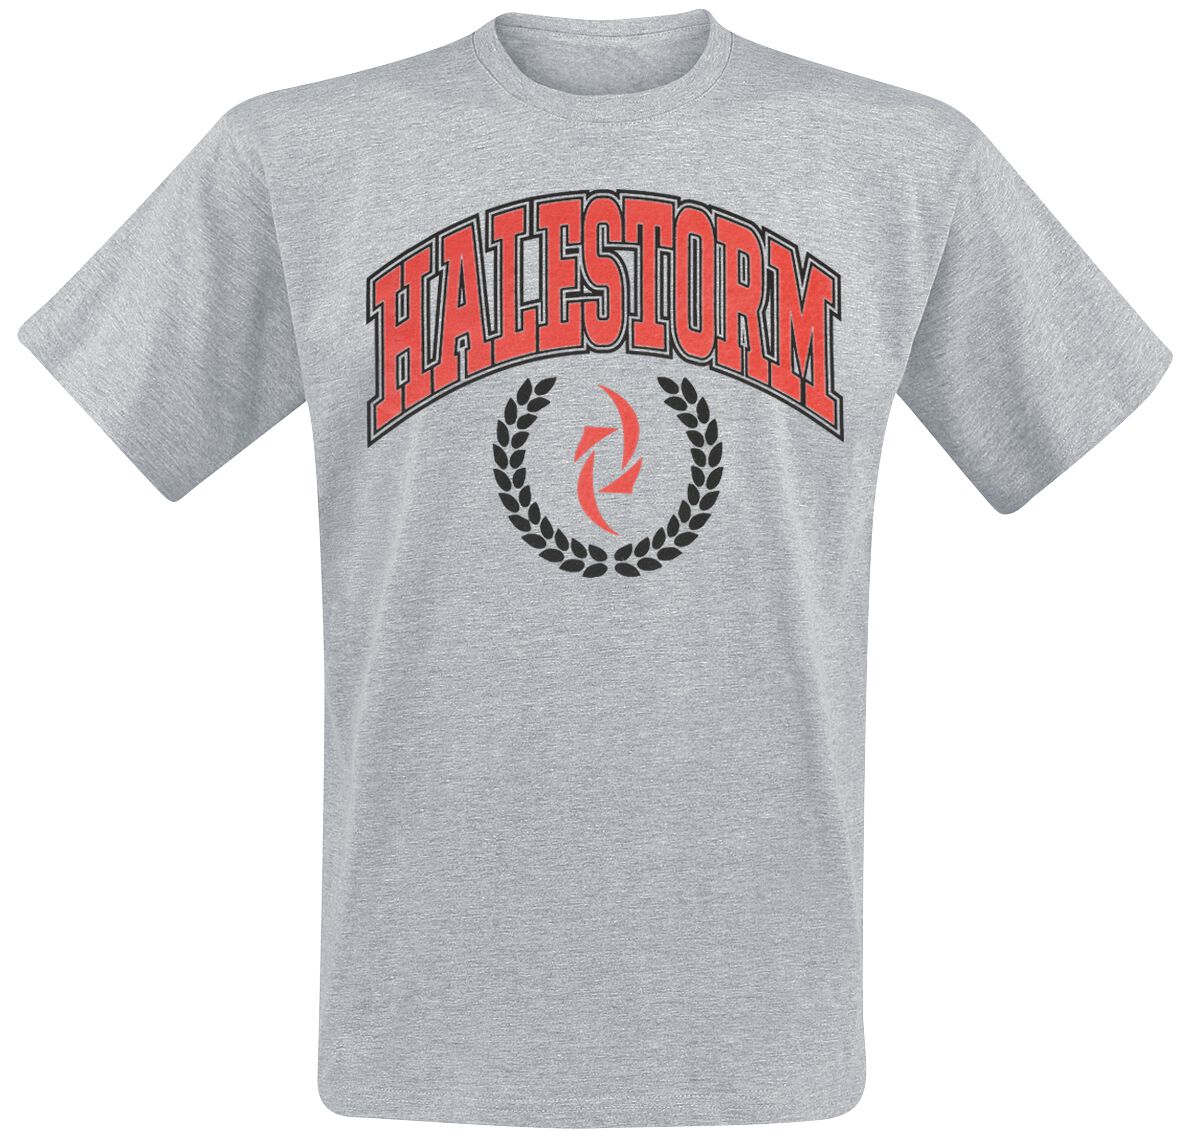 Halestorm T-Shirt - Varsity Logo - S bis XL - für Männer - Größe S - grau meliert  - Lizenziertes Merchandise!